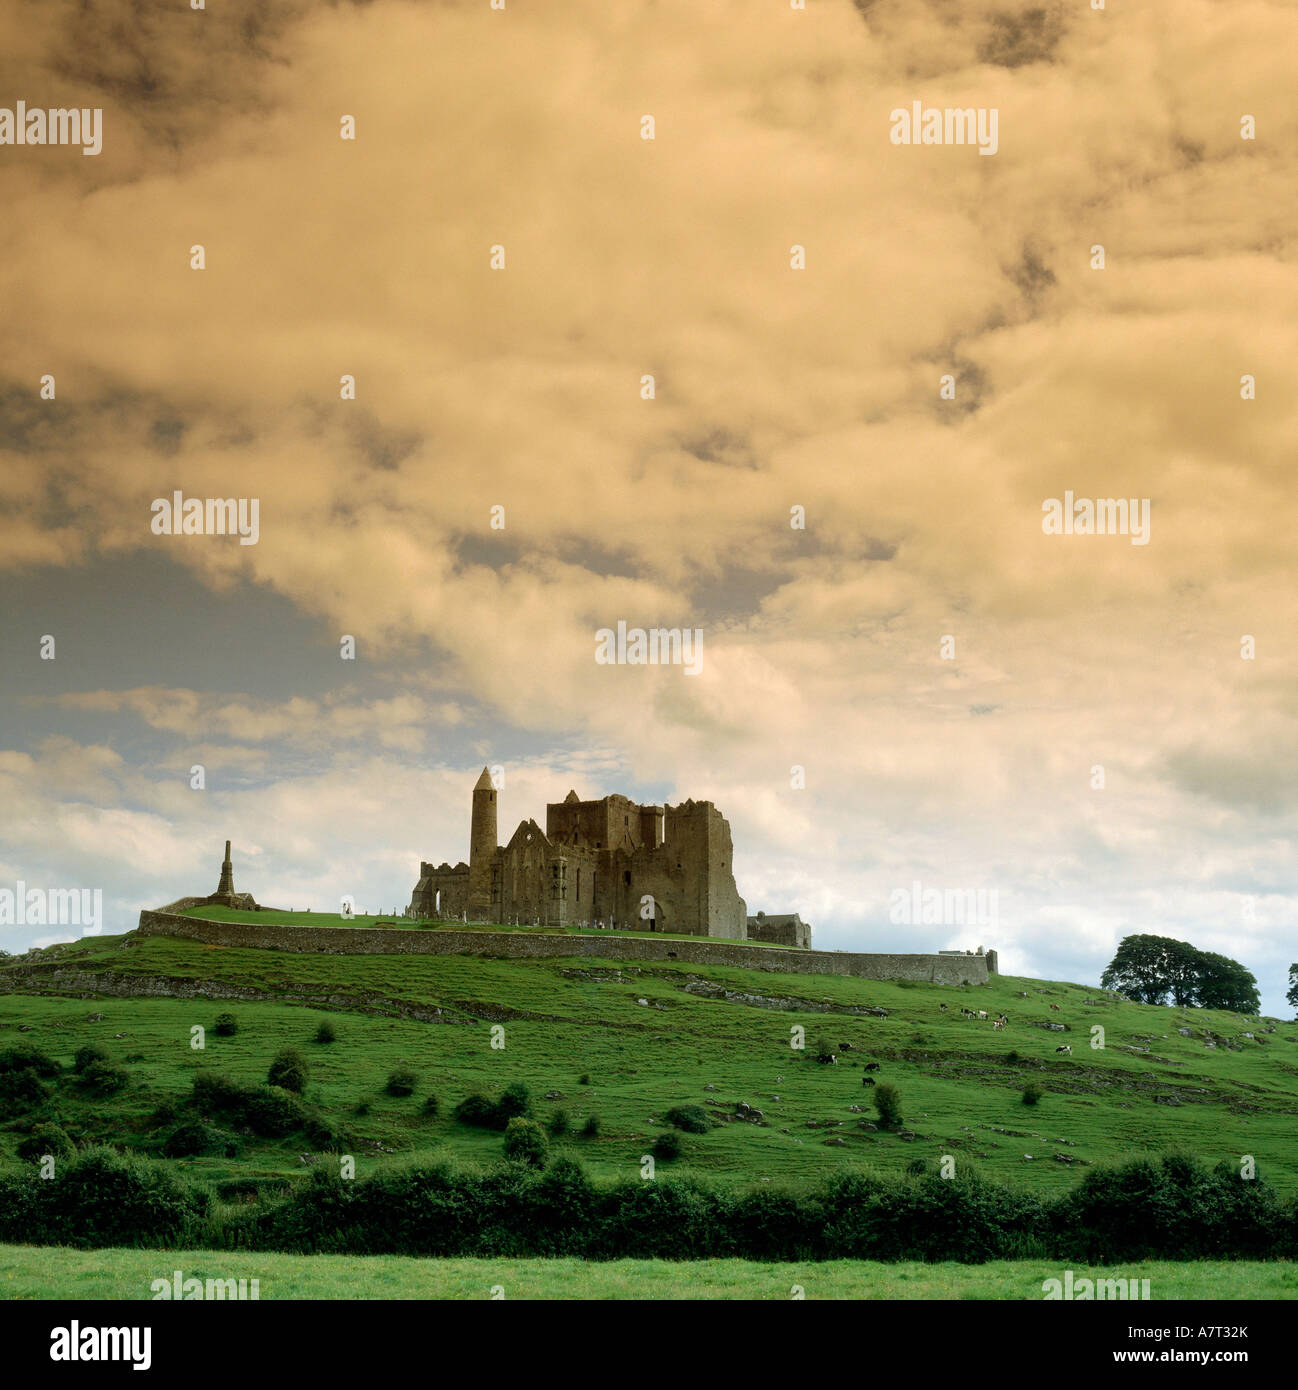 Ángulo de visión baja de palacio en la colina bajo el cielo nublado, Rock of Cashel, República de Irlanda Foto de stock